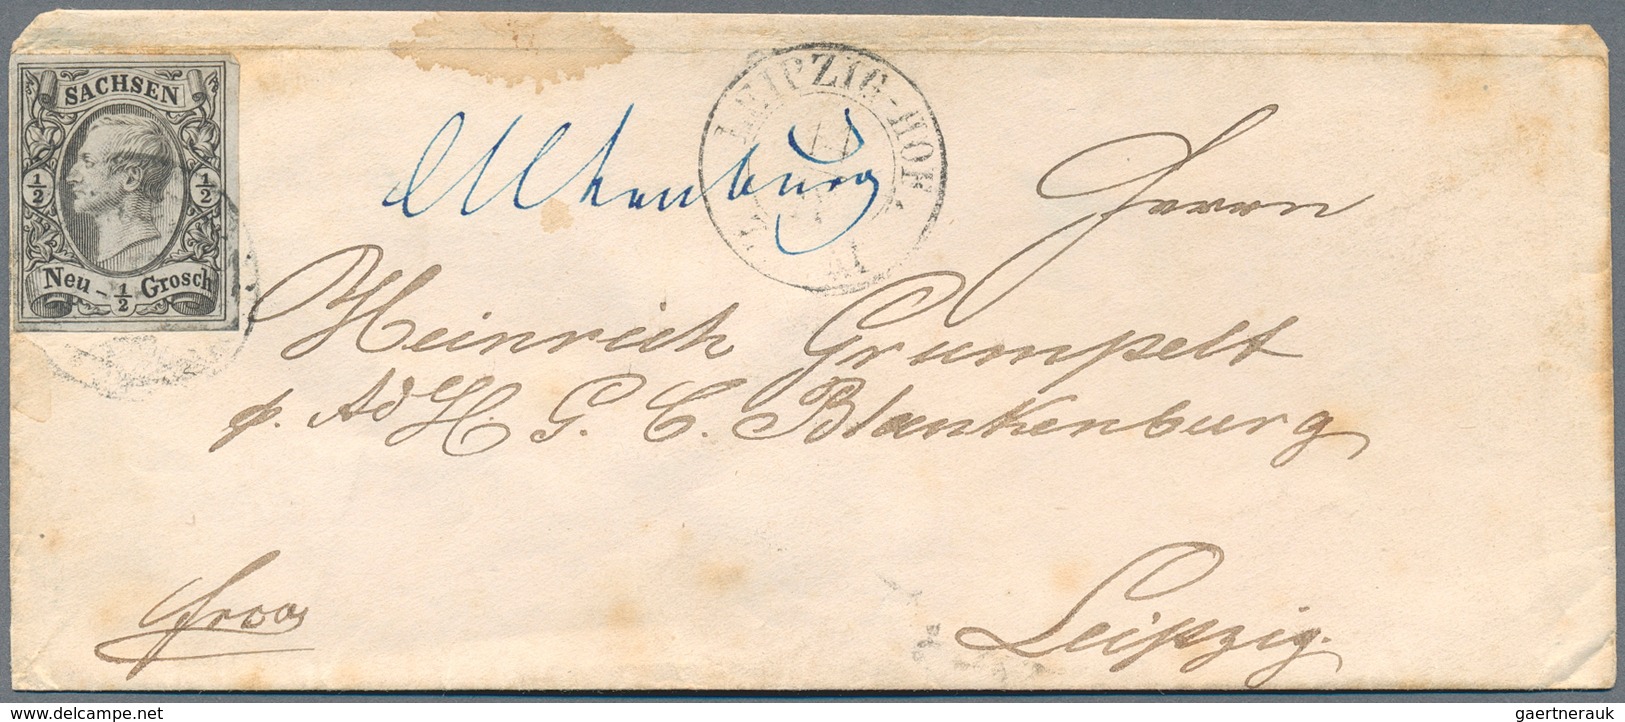 Sachsen - Marken und Briefe: 1854/1872 (ca.), Partie von rund 170 Belegen mit viel Bahnpost, Drucksa